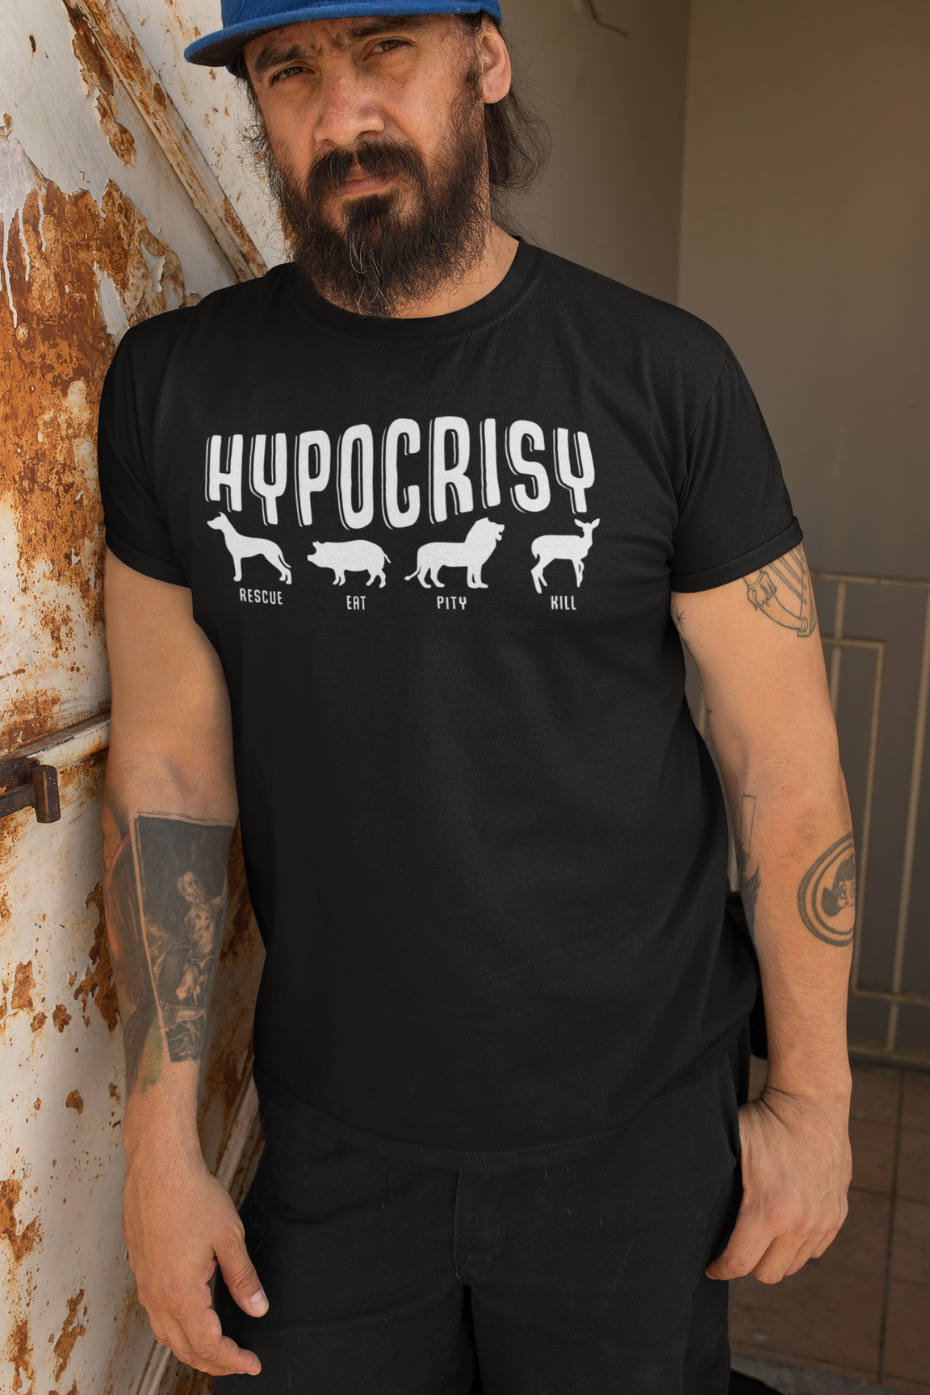 Hypocrisy - Unisex Basic Softstyle T-Shirt